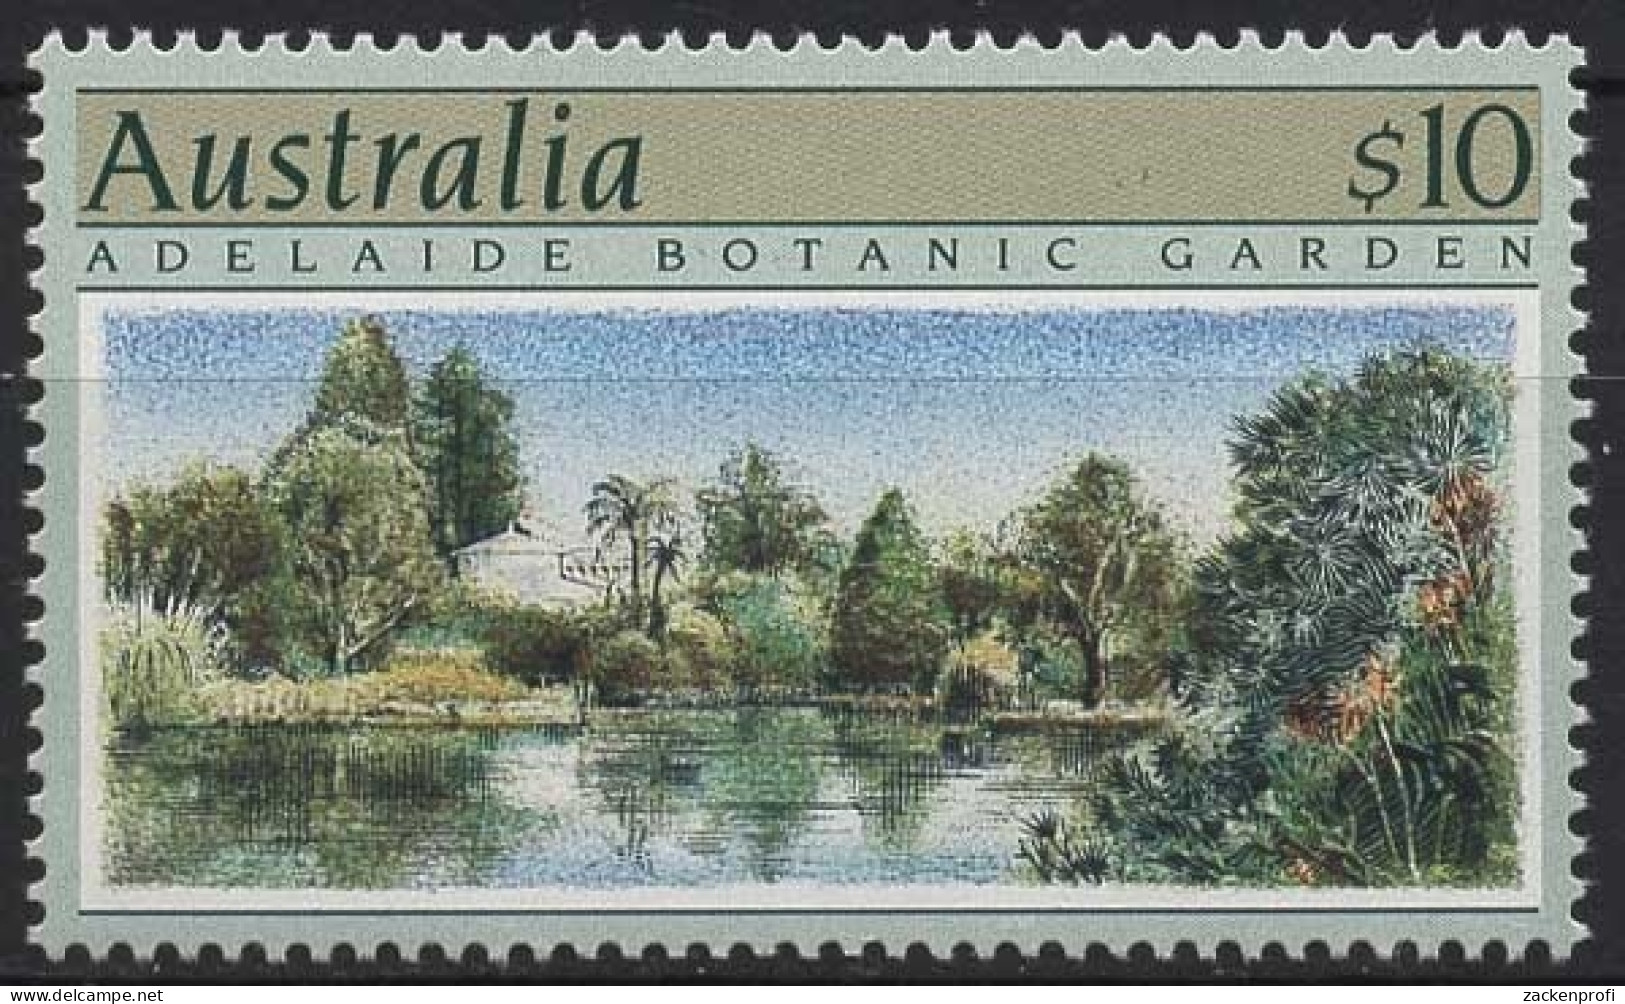 Australien 1989 Gartenanlagen 1150 Postfrisch - Ungebraucht